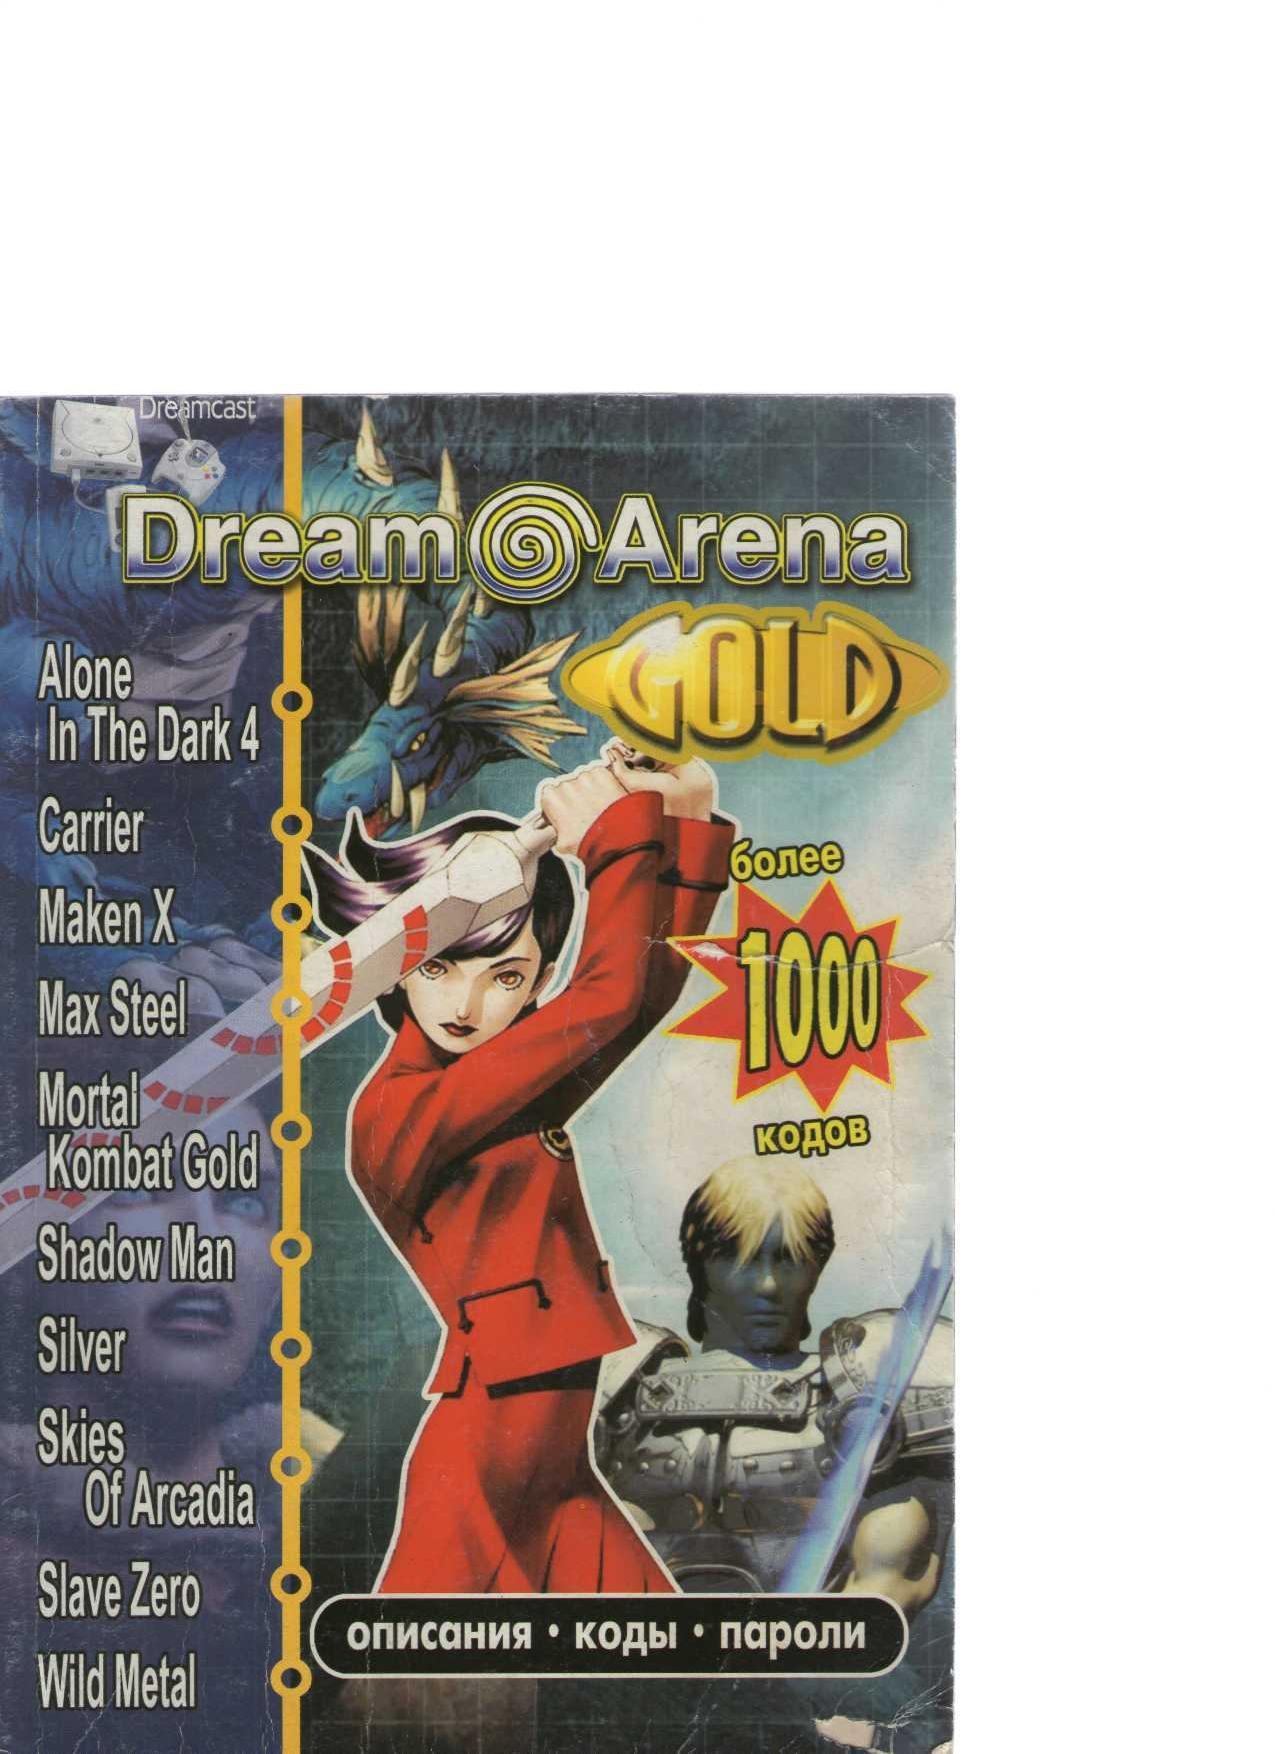 DreamArena (GOLD) RU 2002-02.pdf